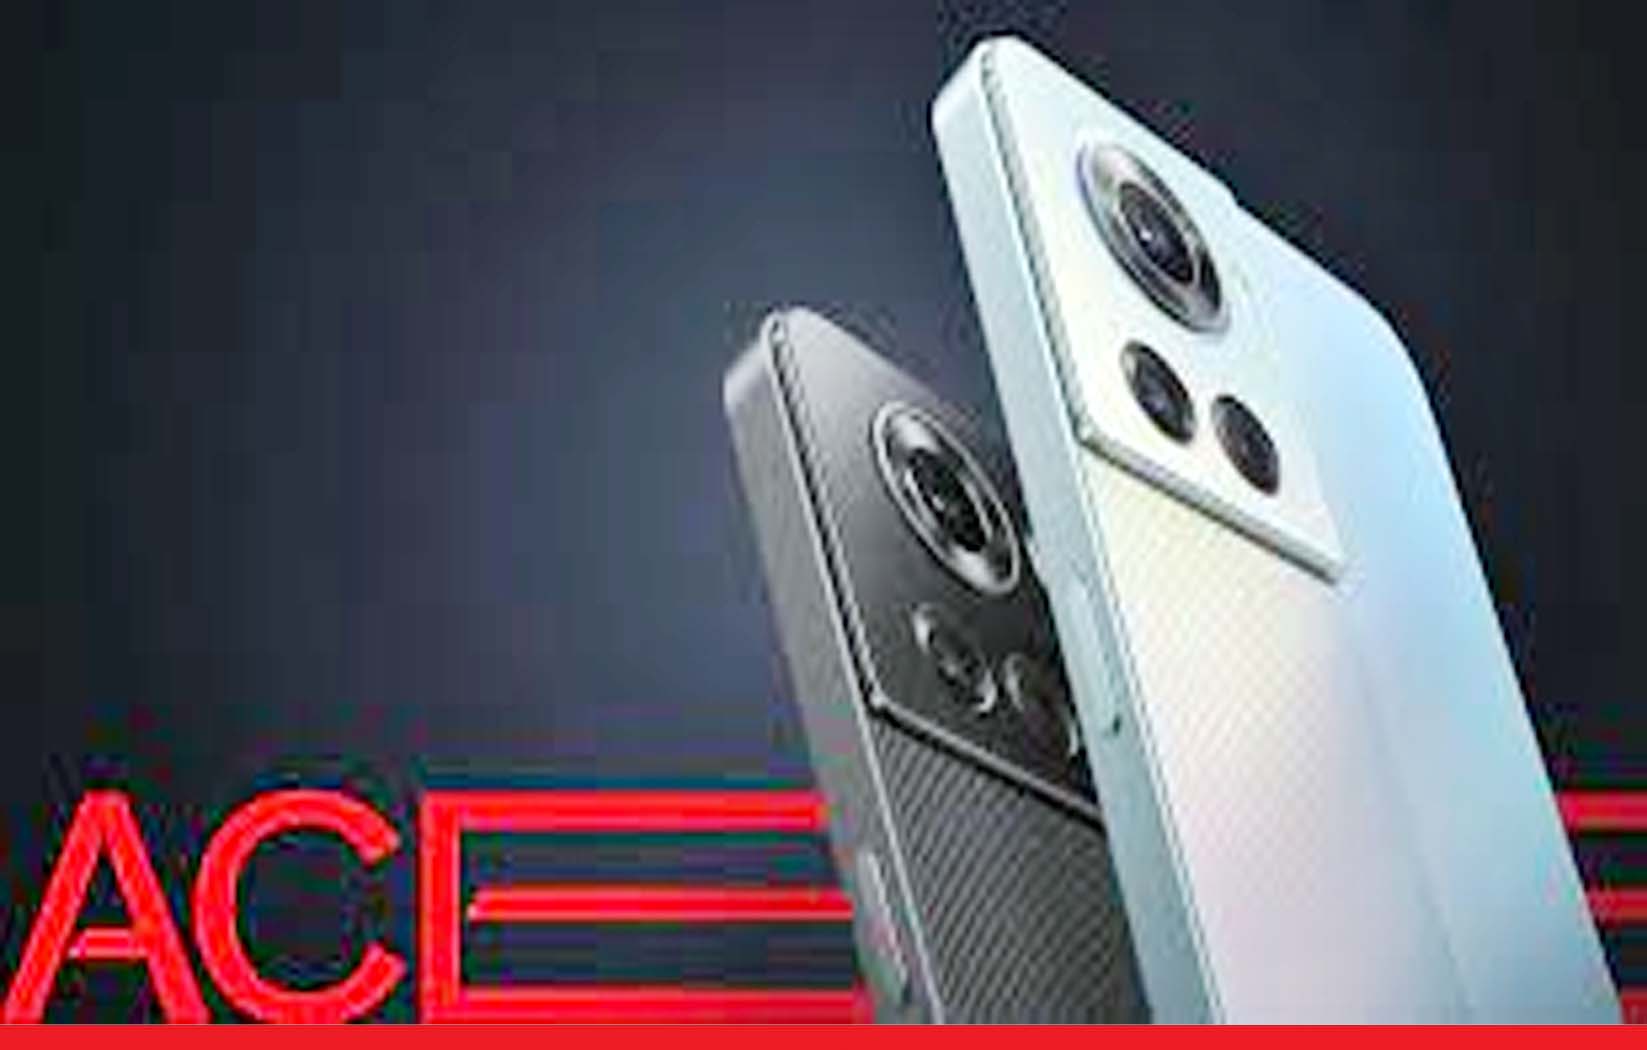 12 जीबी रैम के साथ आया वनप्लस Ace 5G स्मार्टफोन, 28 अप्रैल को होगा लांच